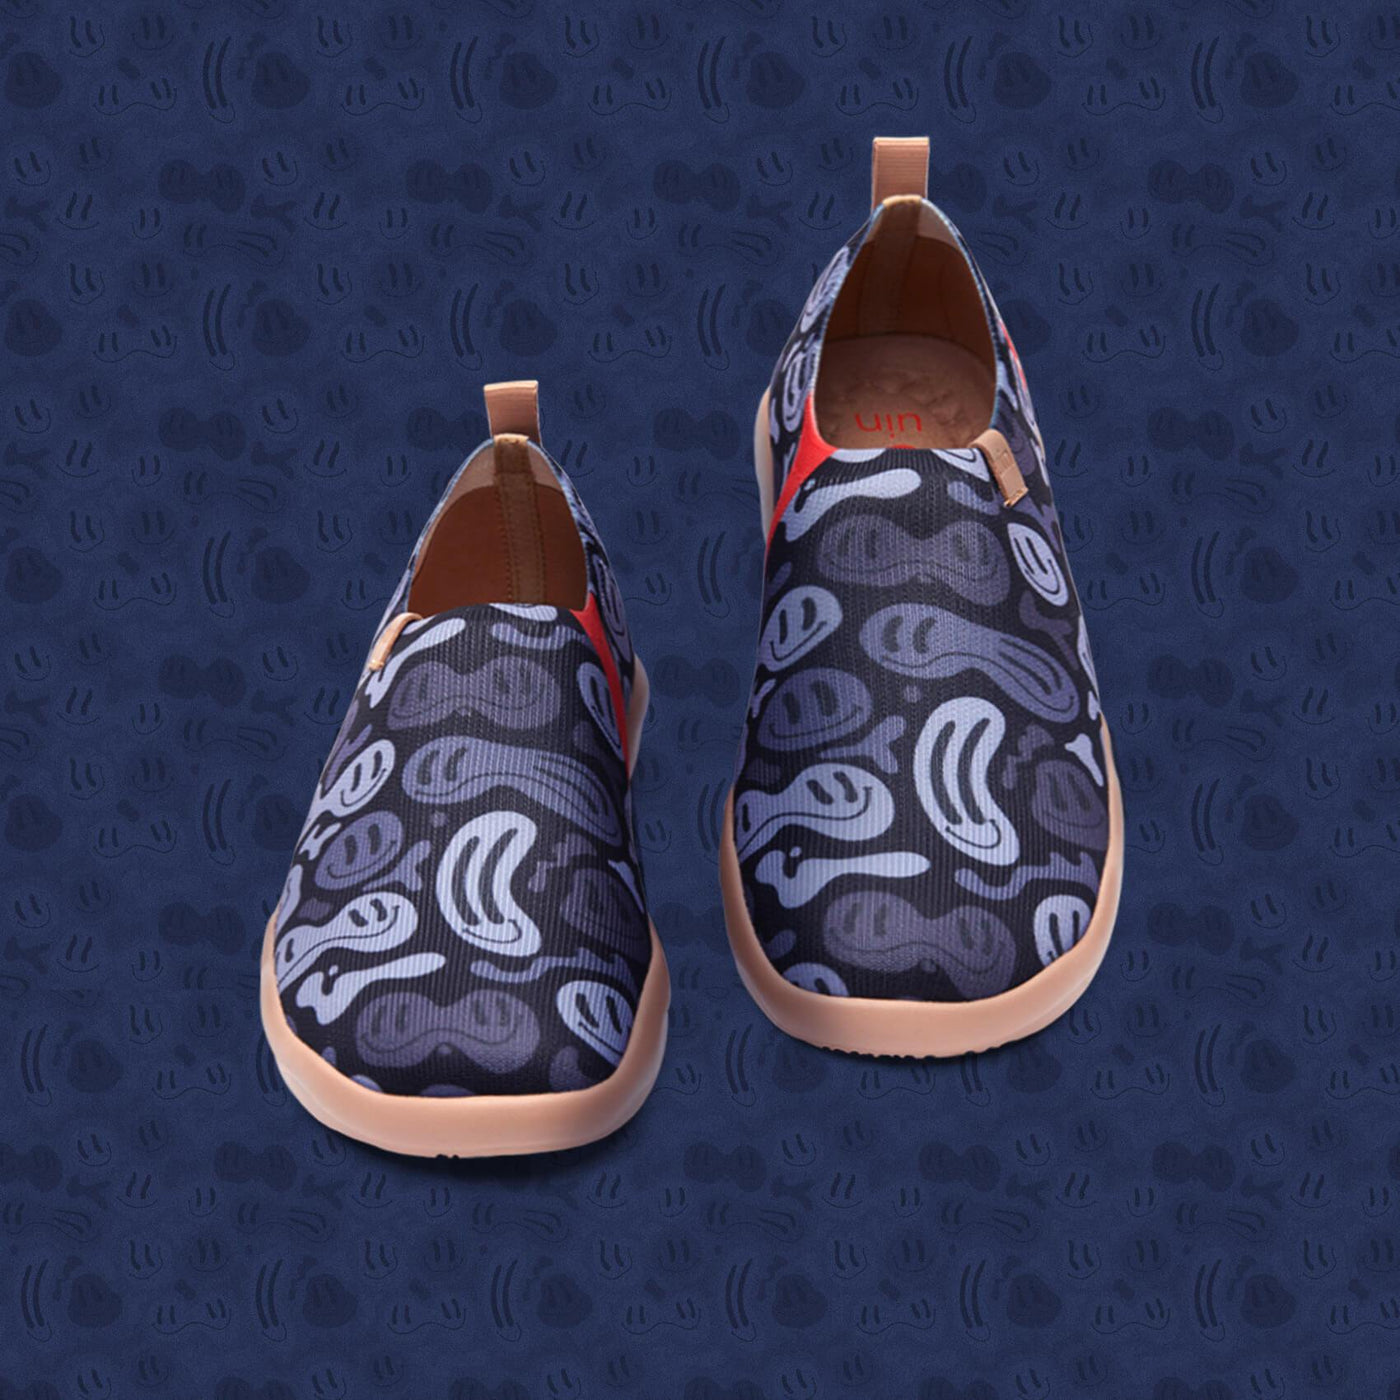 UIN Footwear Men Hidden Toledo II Canvas loafers